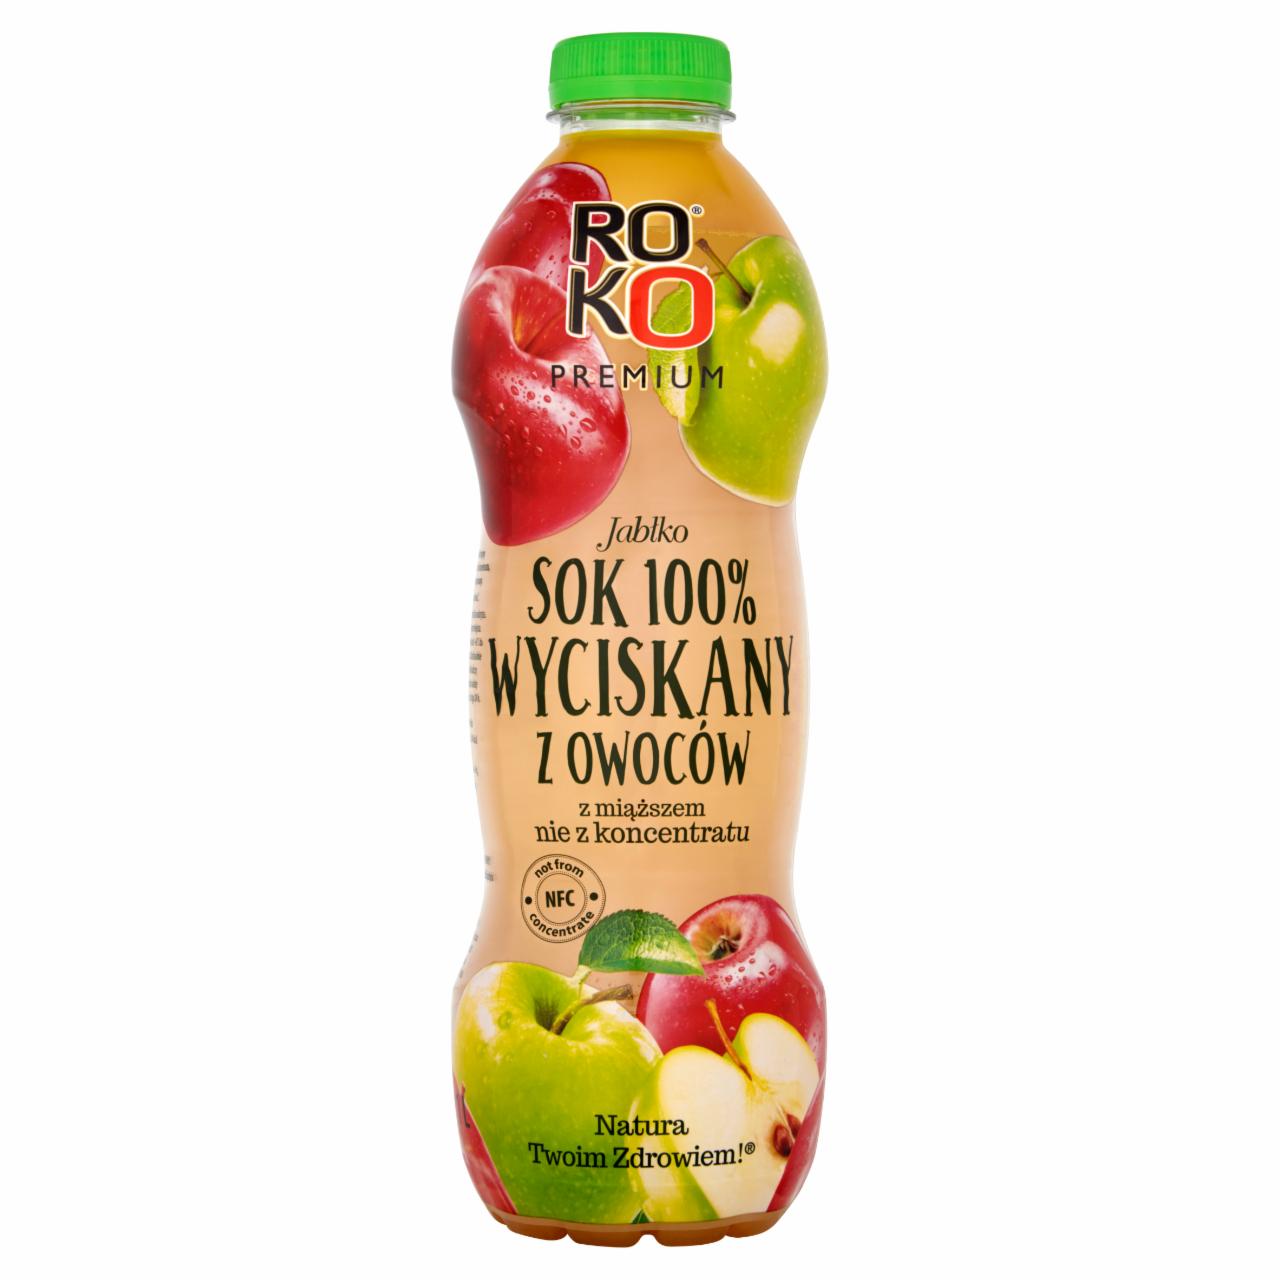 Zdjęcia - ROKO Premium Jabłko Sok 100% wyciskany z owoców 1 l